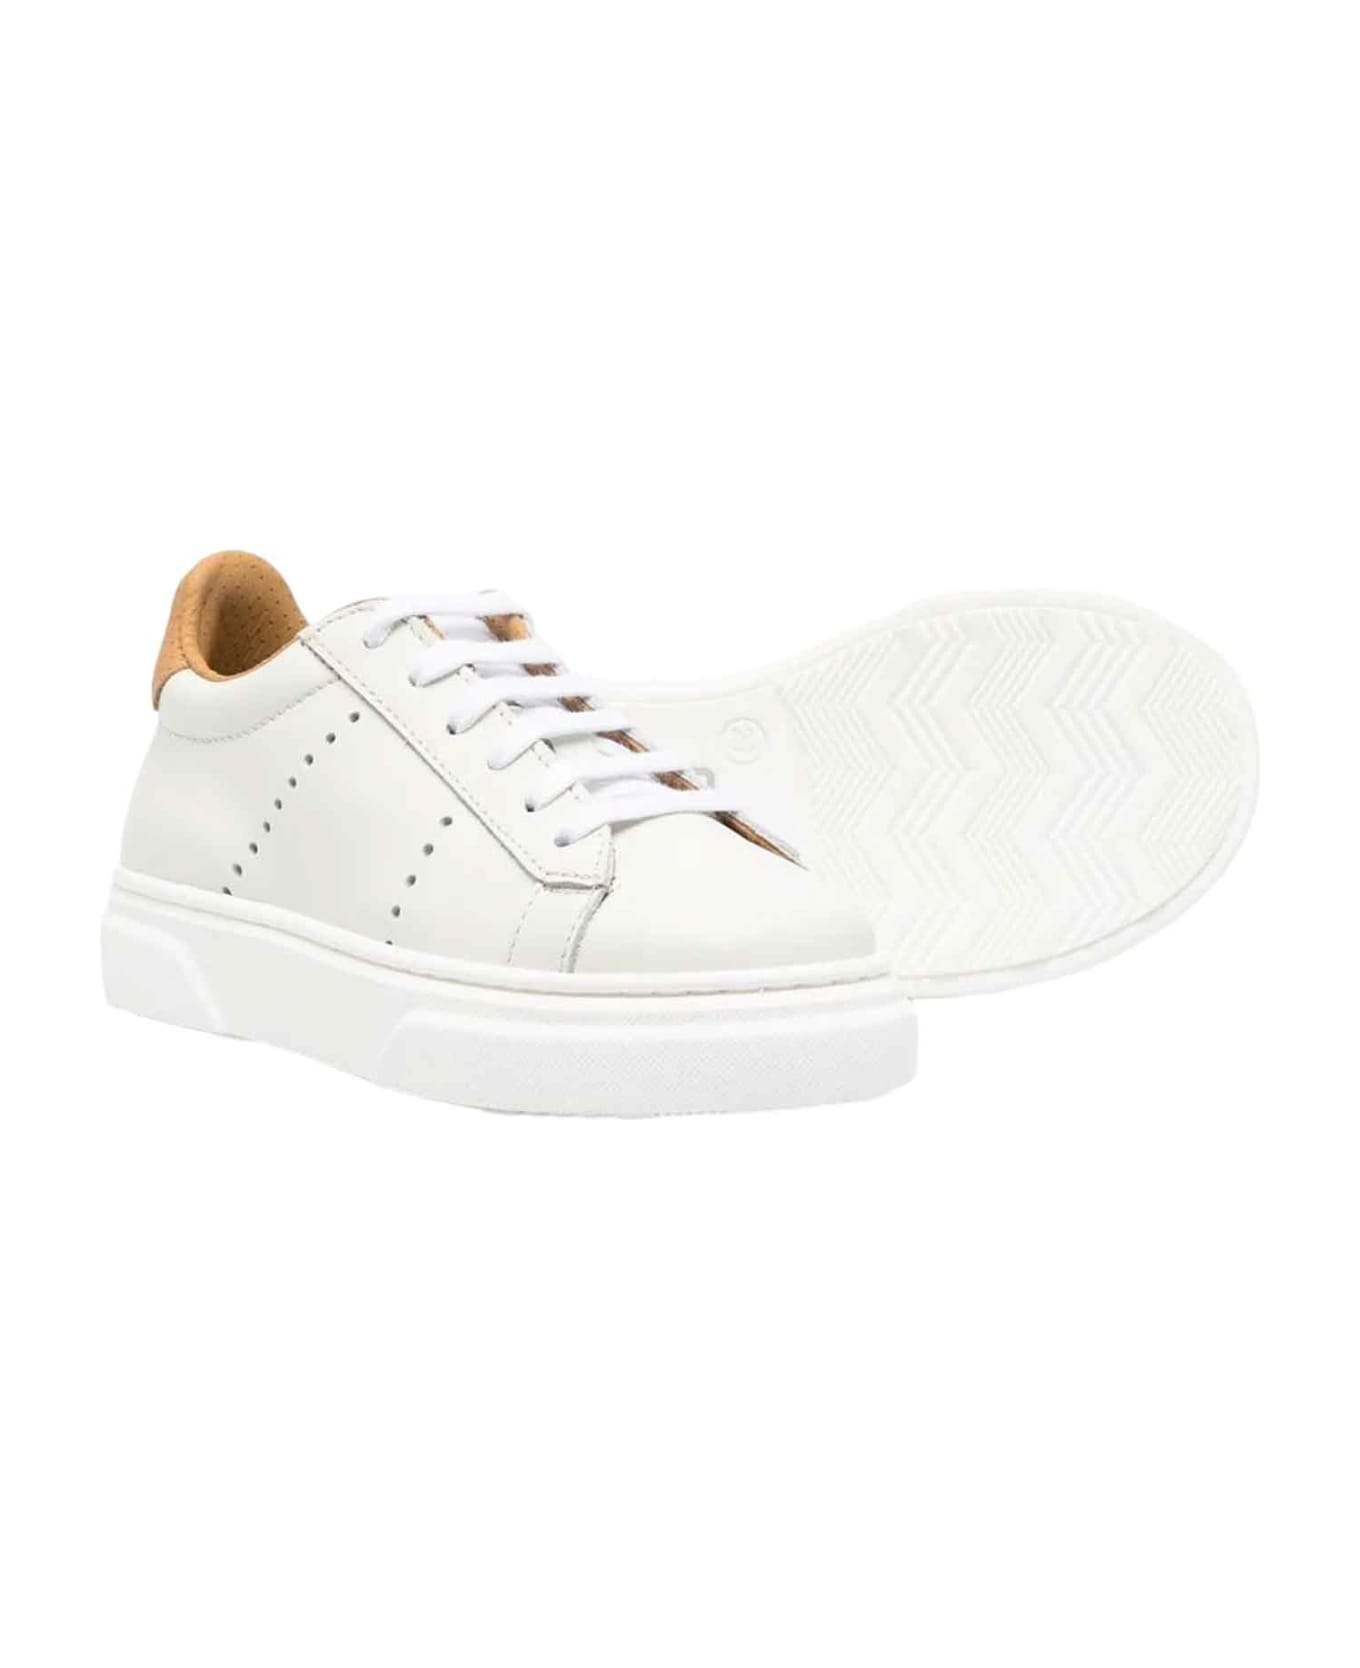 Eleventy White Sneakers Unisex - Bianco シューズ